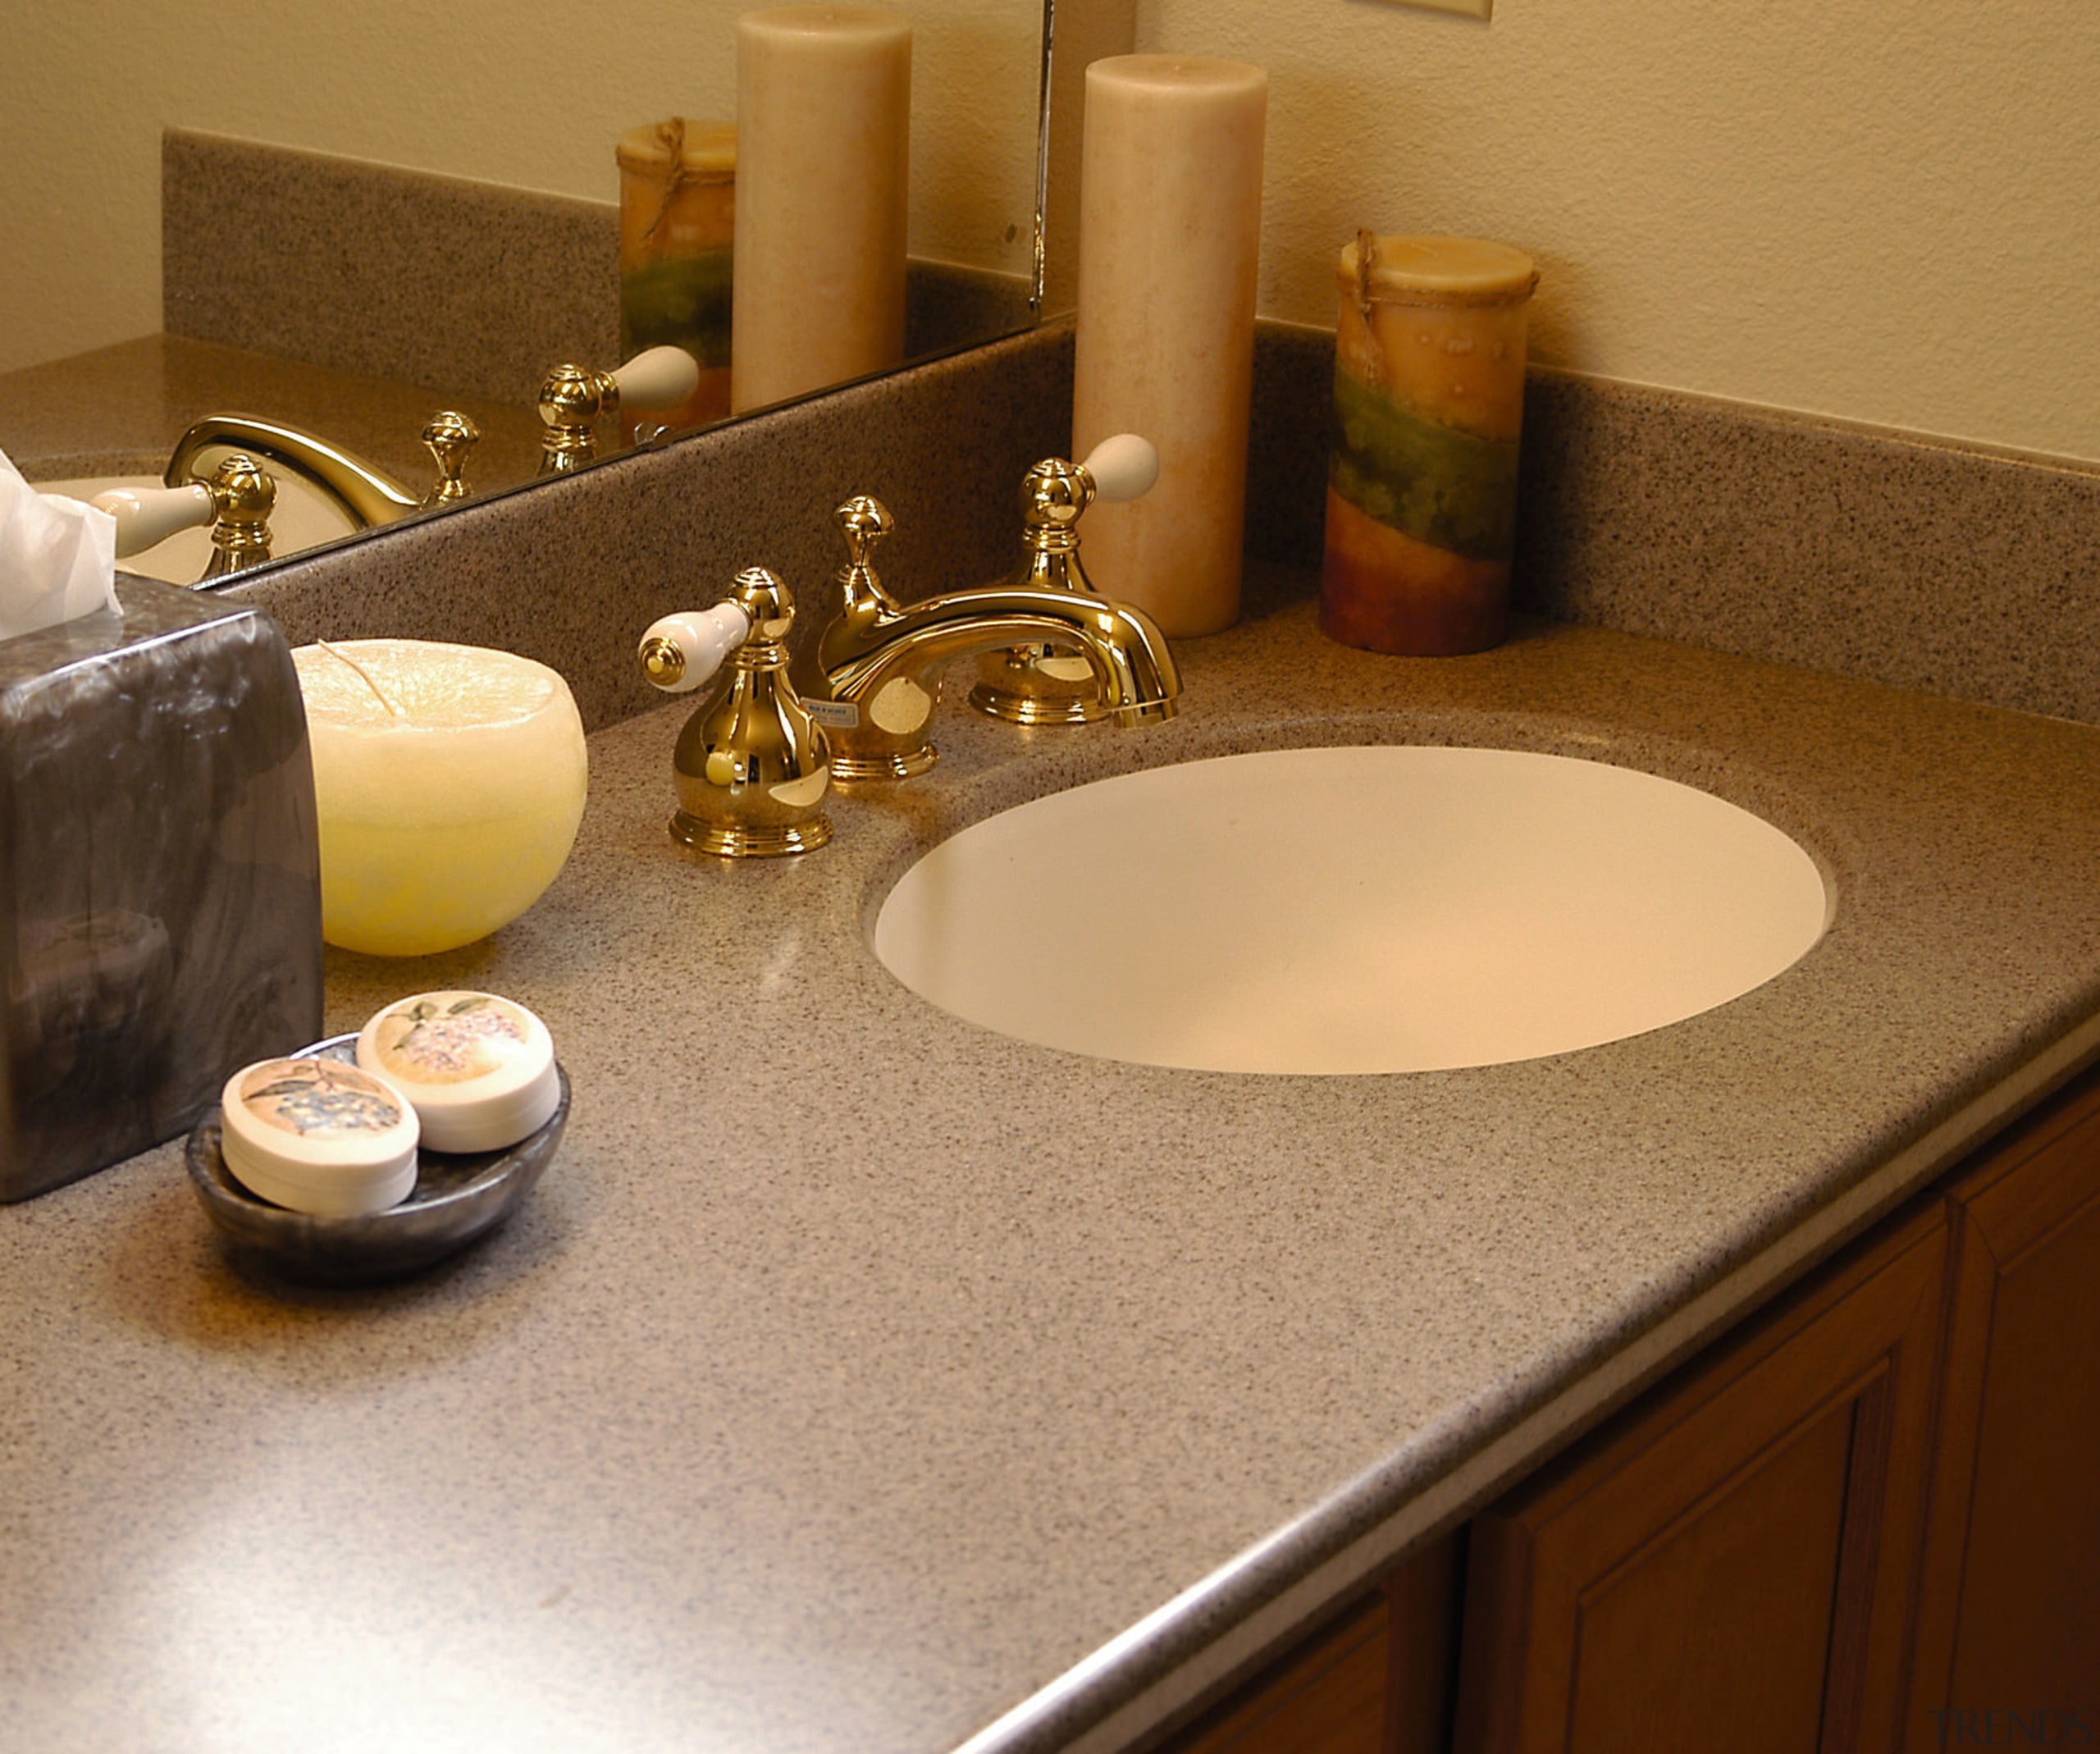 View of the bathroom vanity unit - View countertop, room, sink, table, brown, orange